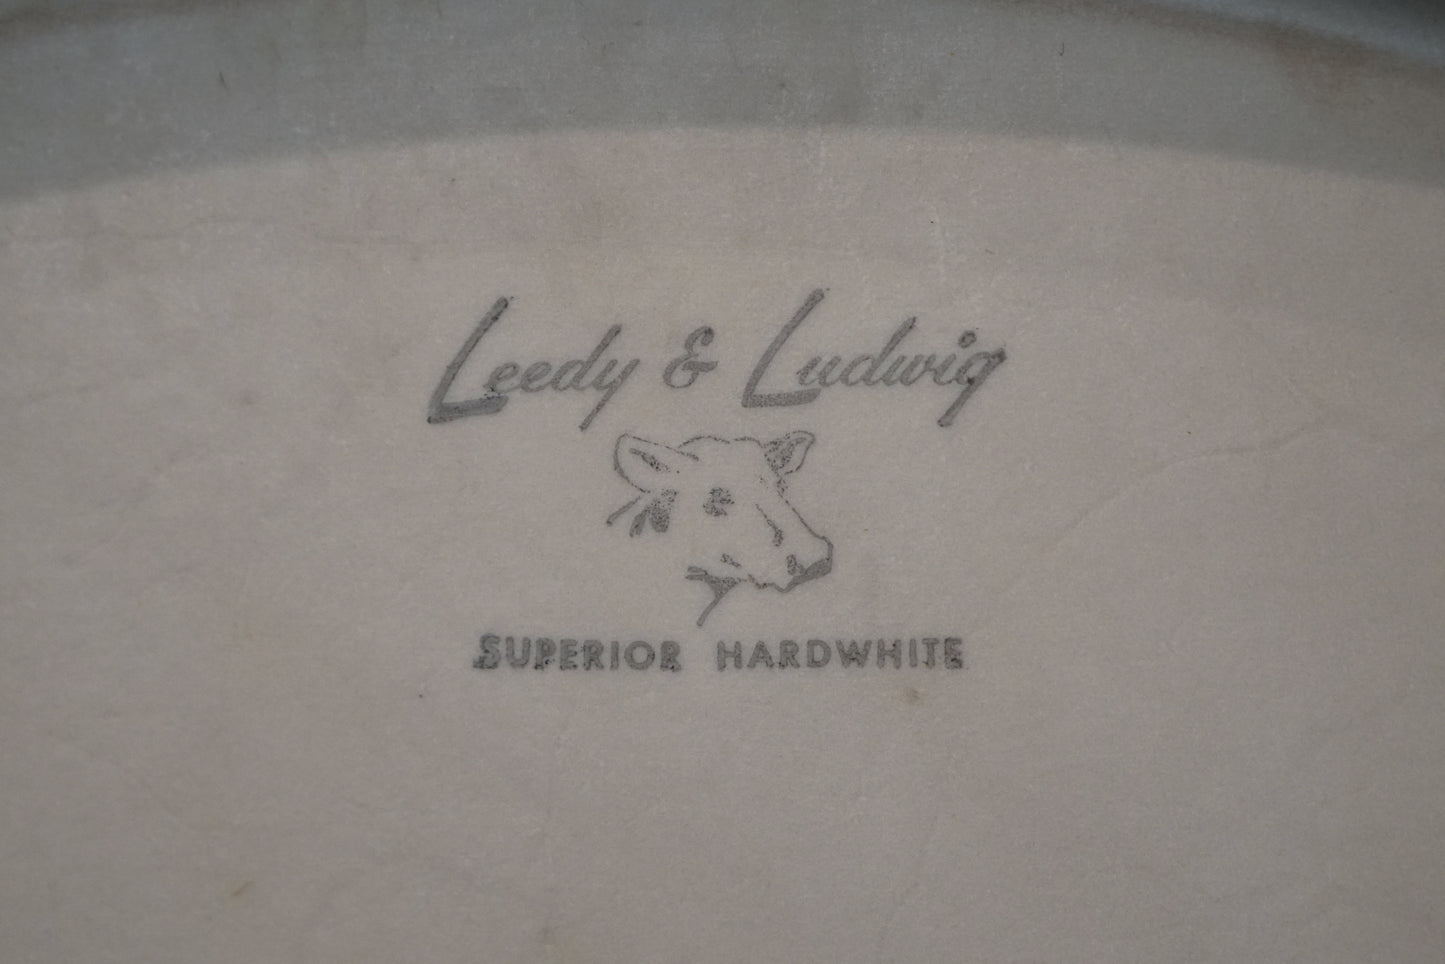 Leedy & Ludwig 13/16/22/5.5x14" Knob Tension Drum Set - 1950s WMP